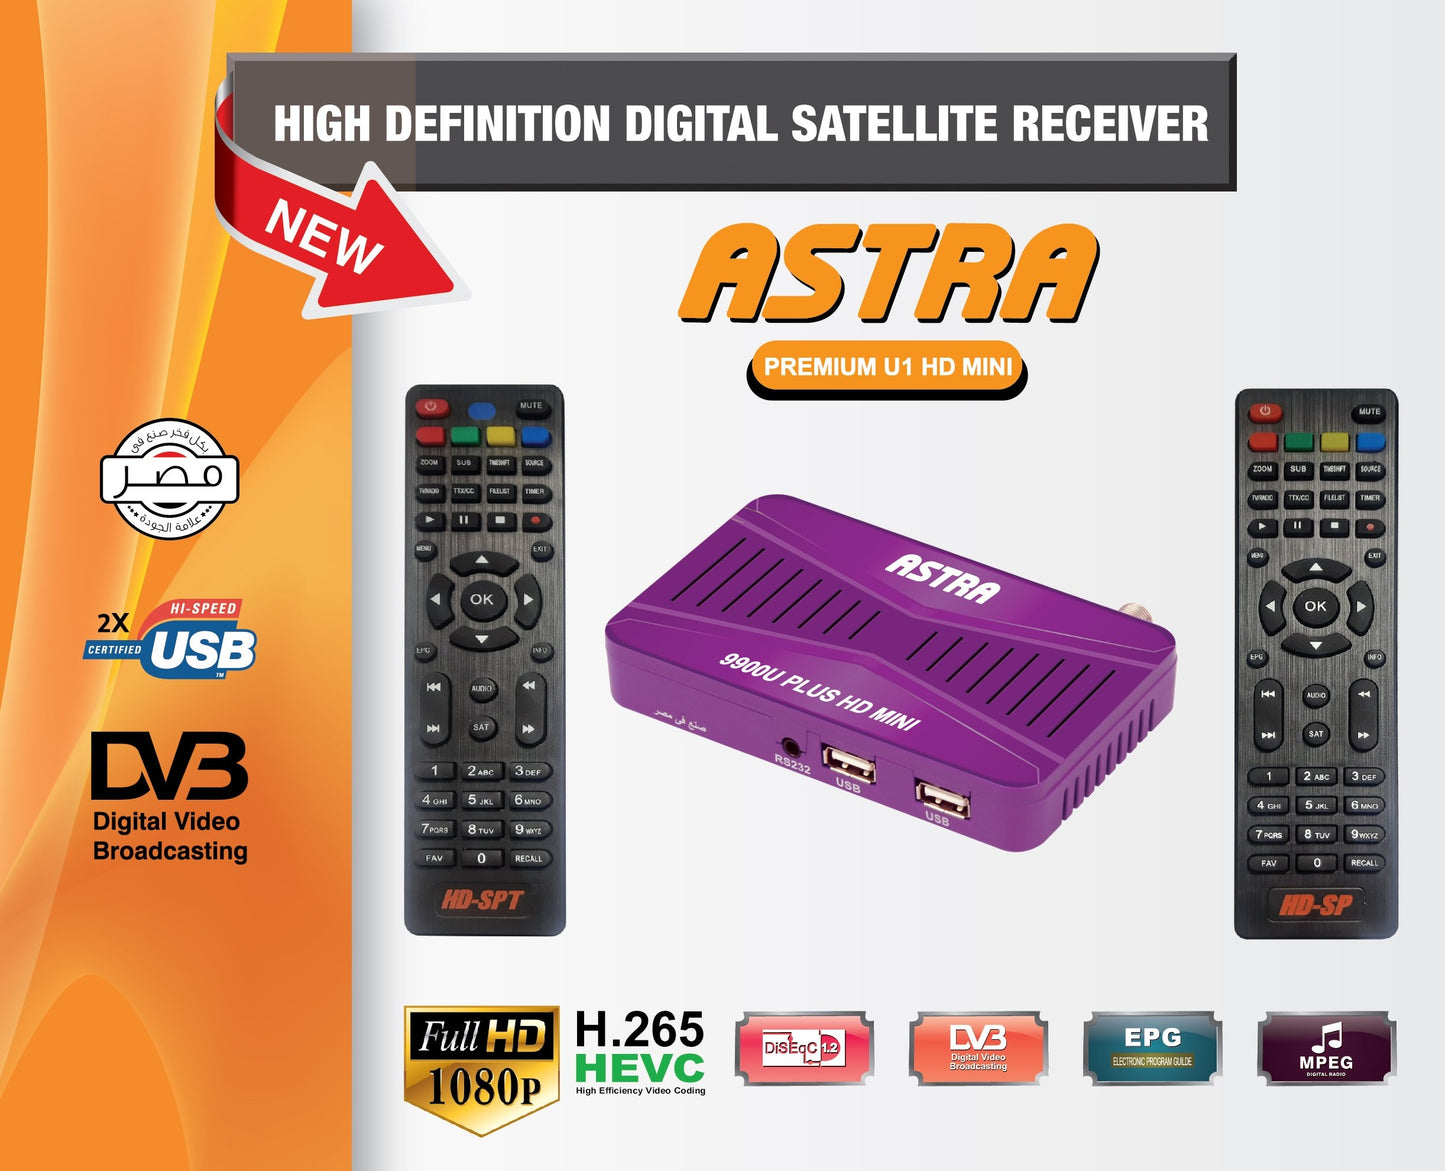 ASTRA, PREMIUM U1 HD Mini, Receiver